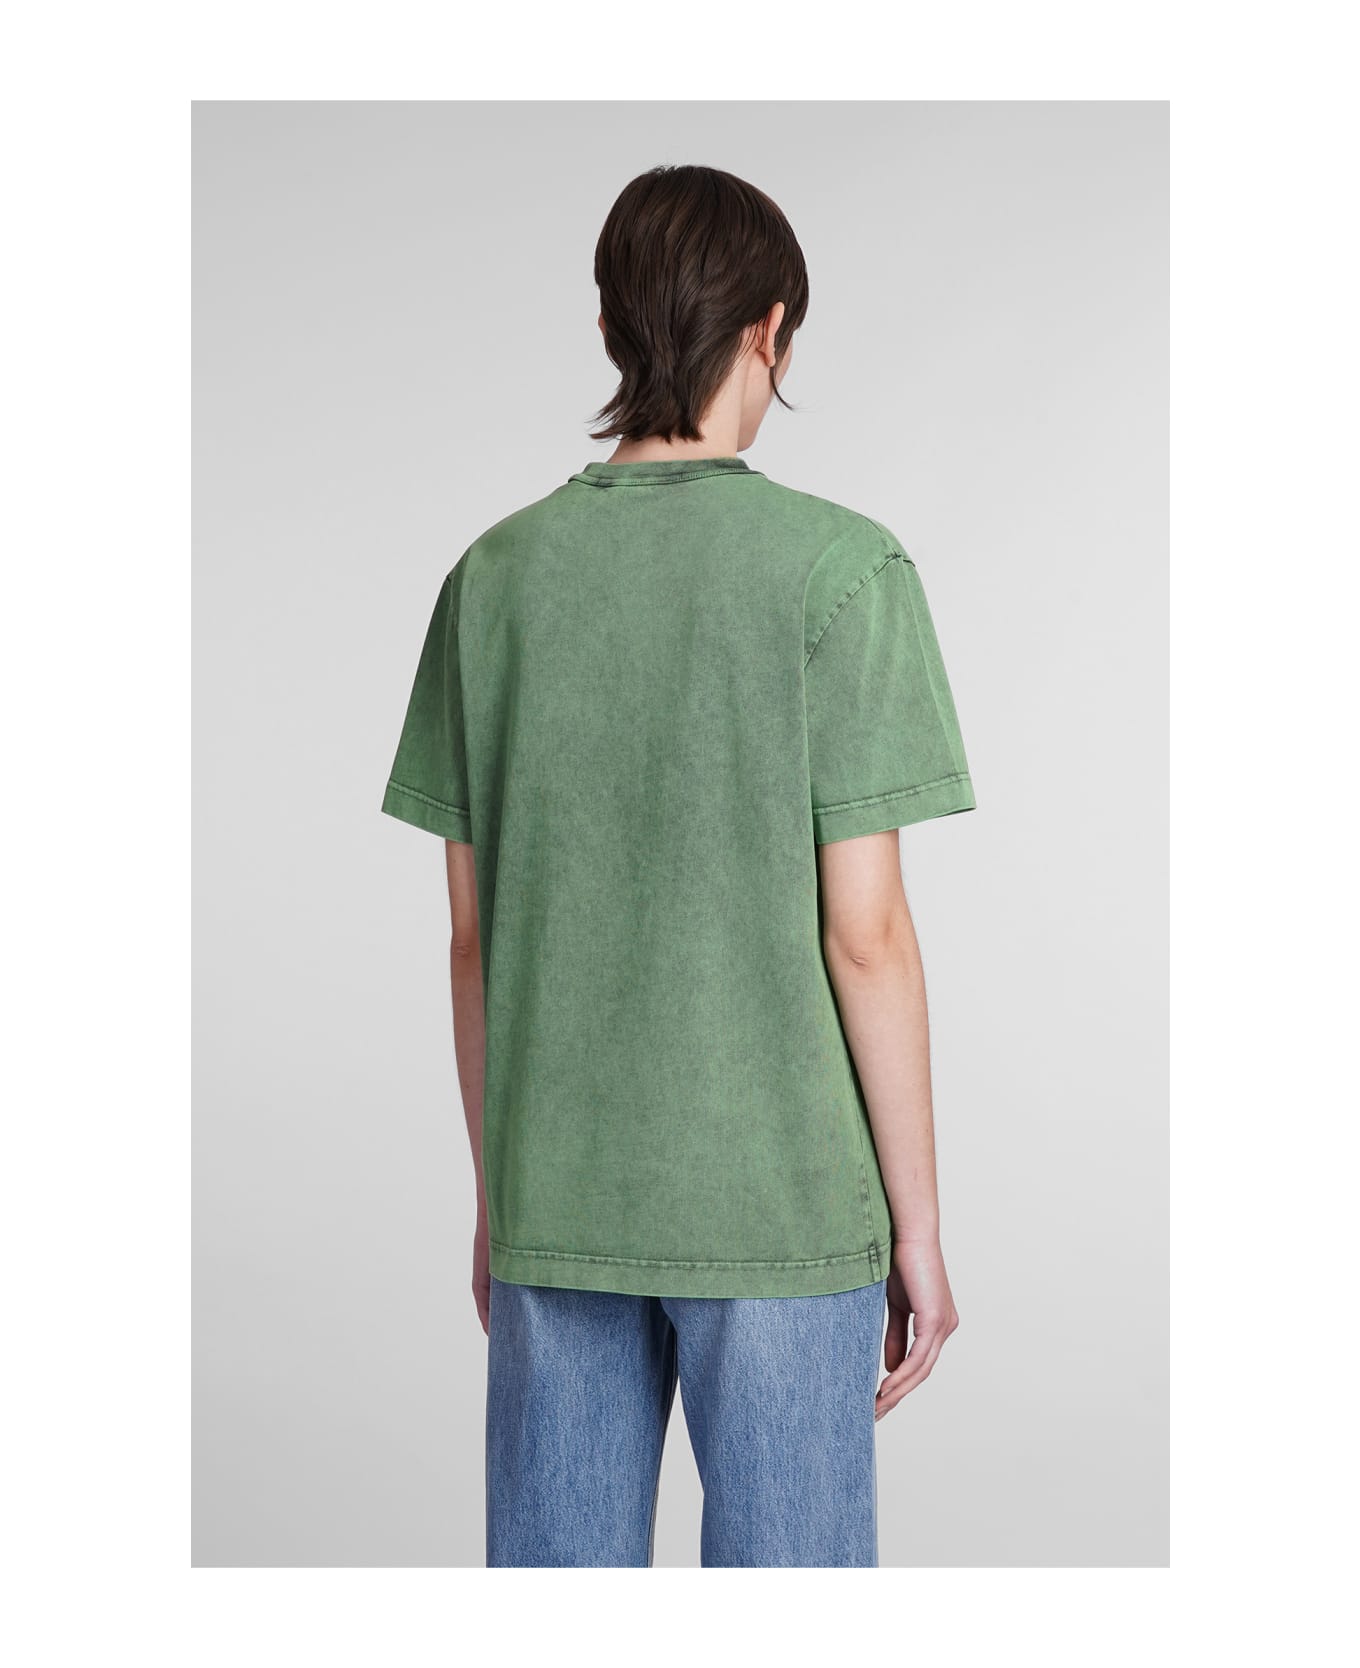 Alexander Wang T-shirt In Green Cotton - green